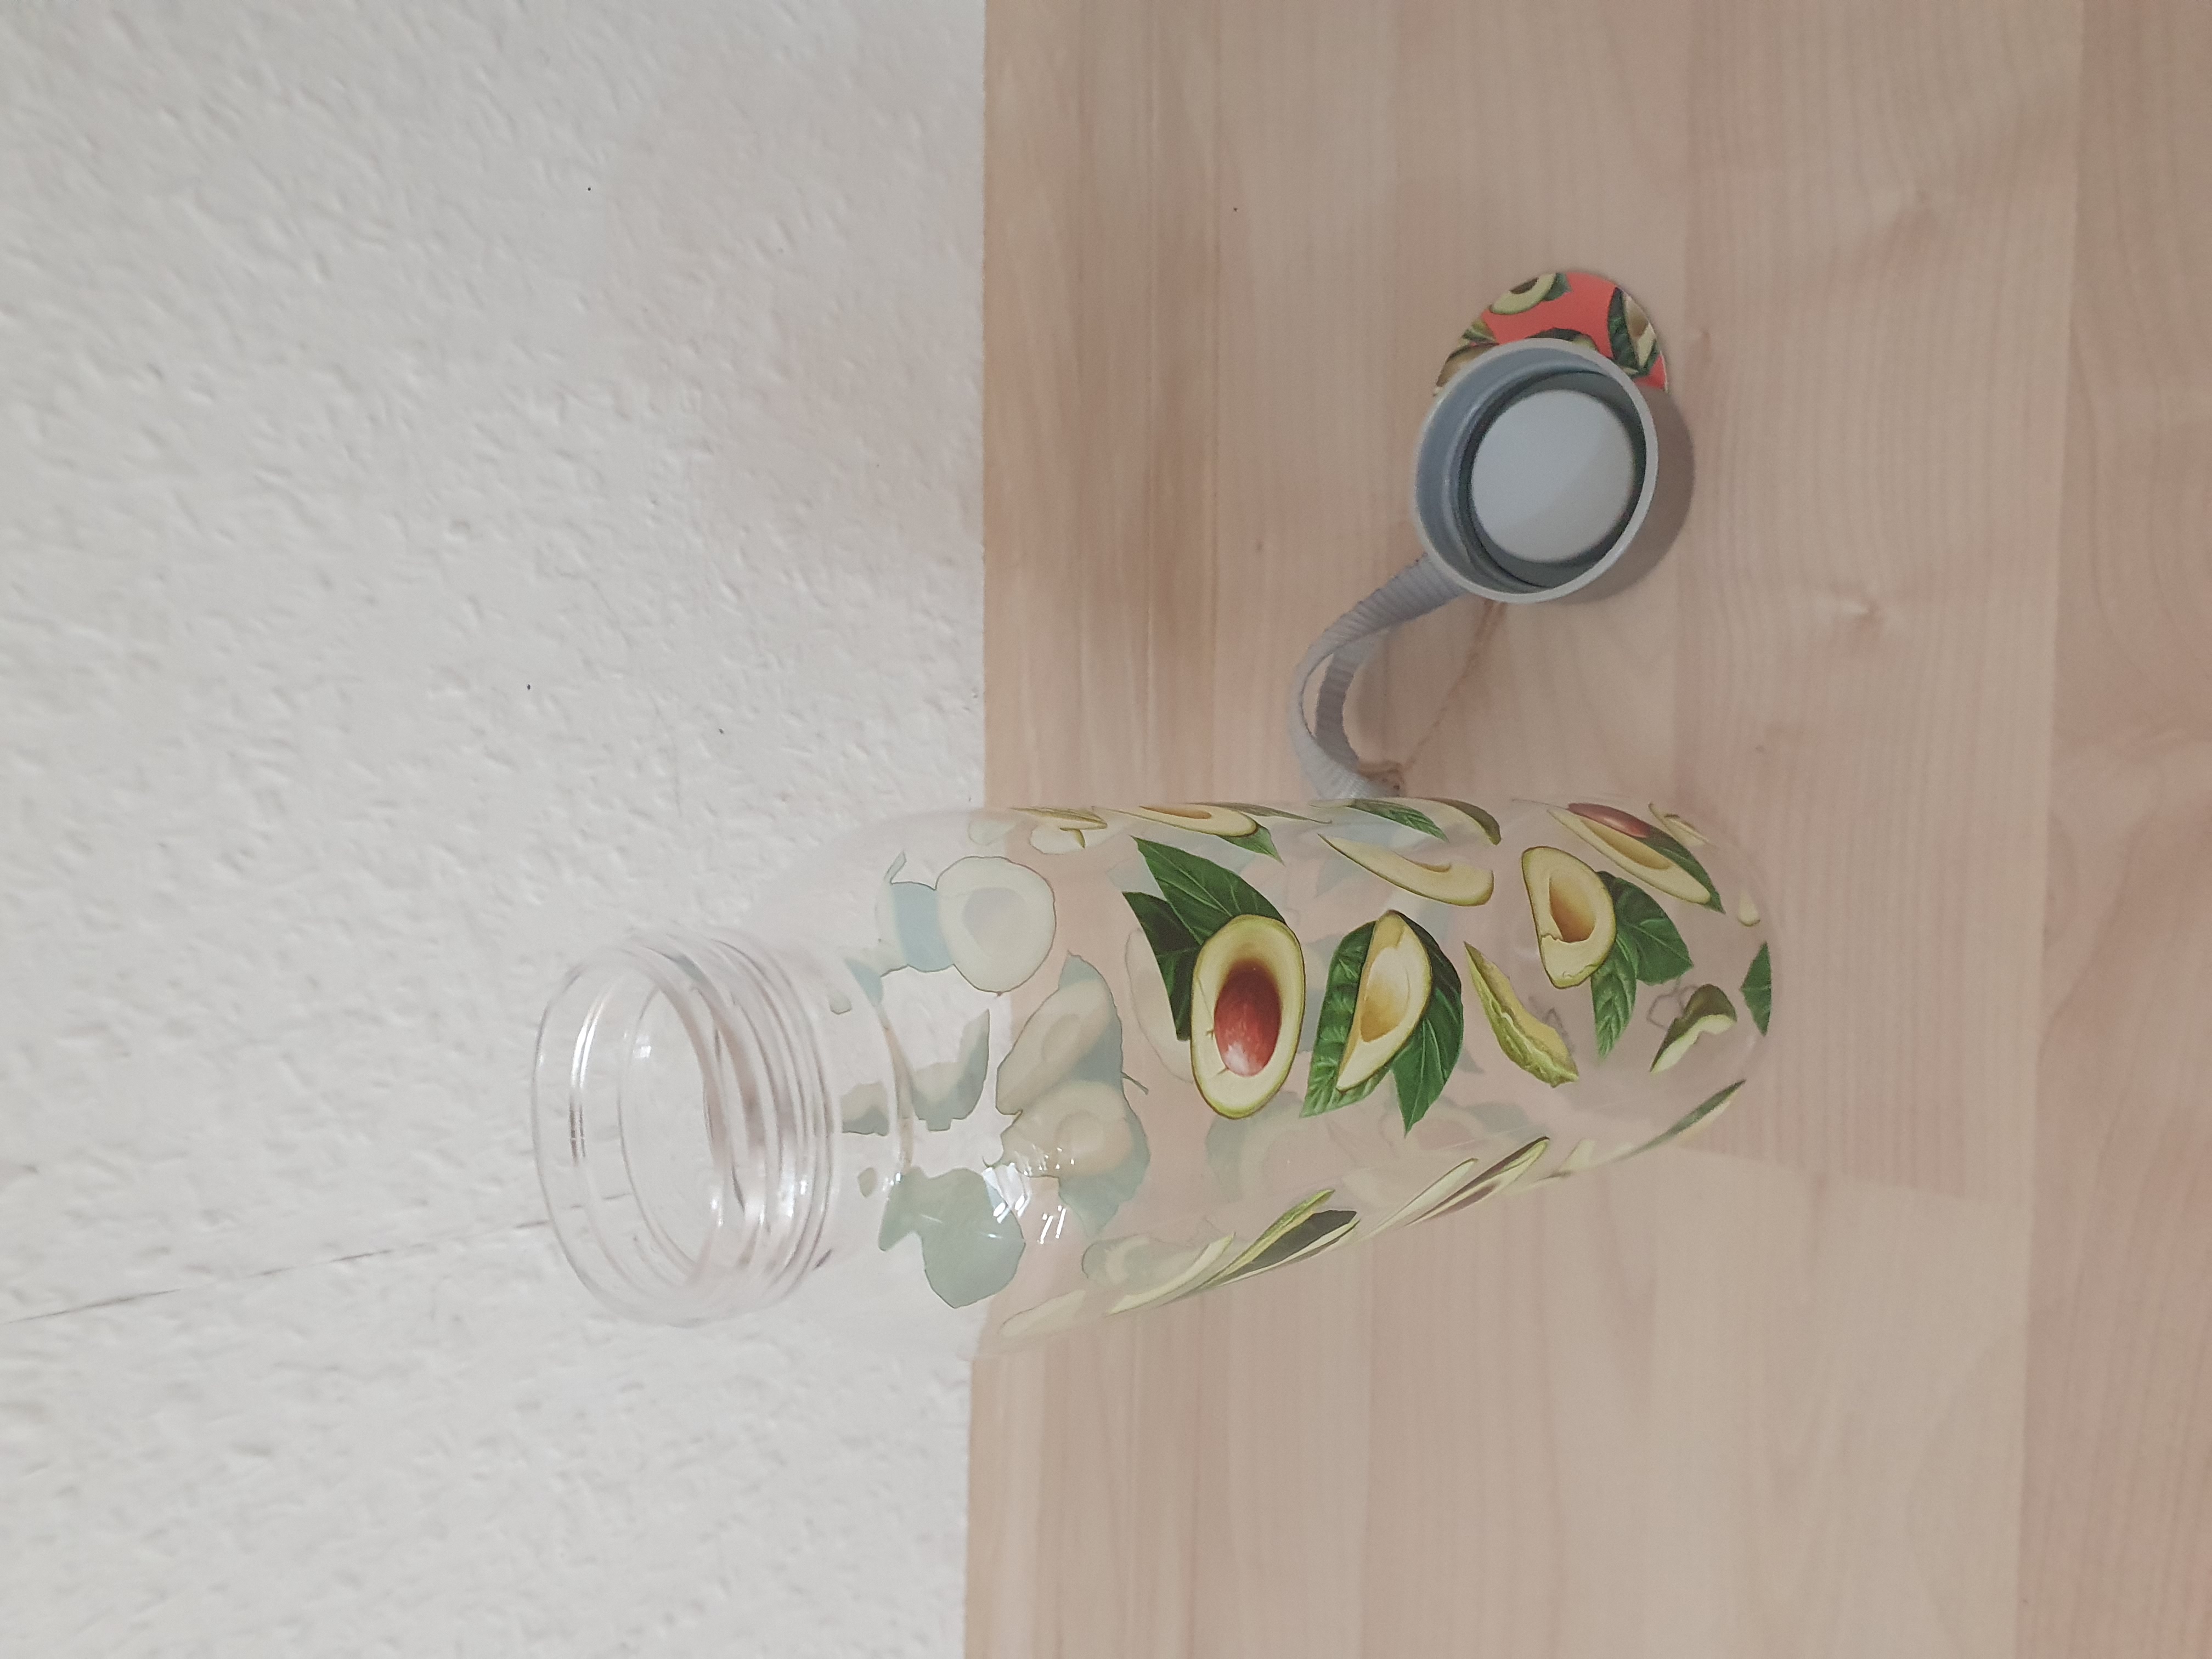 Avocado Design Wasserflasche mit Metalldeckel